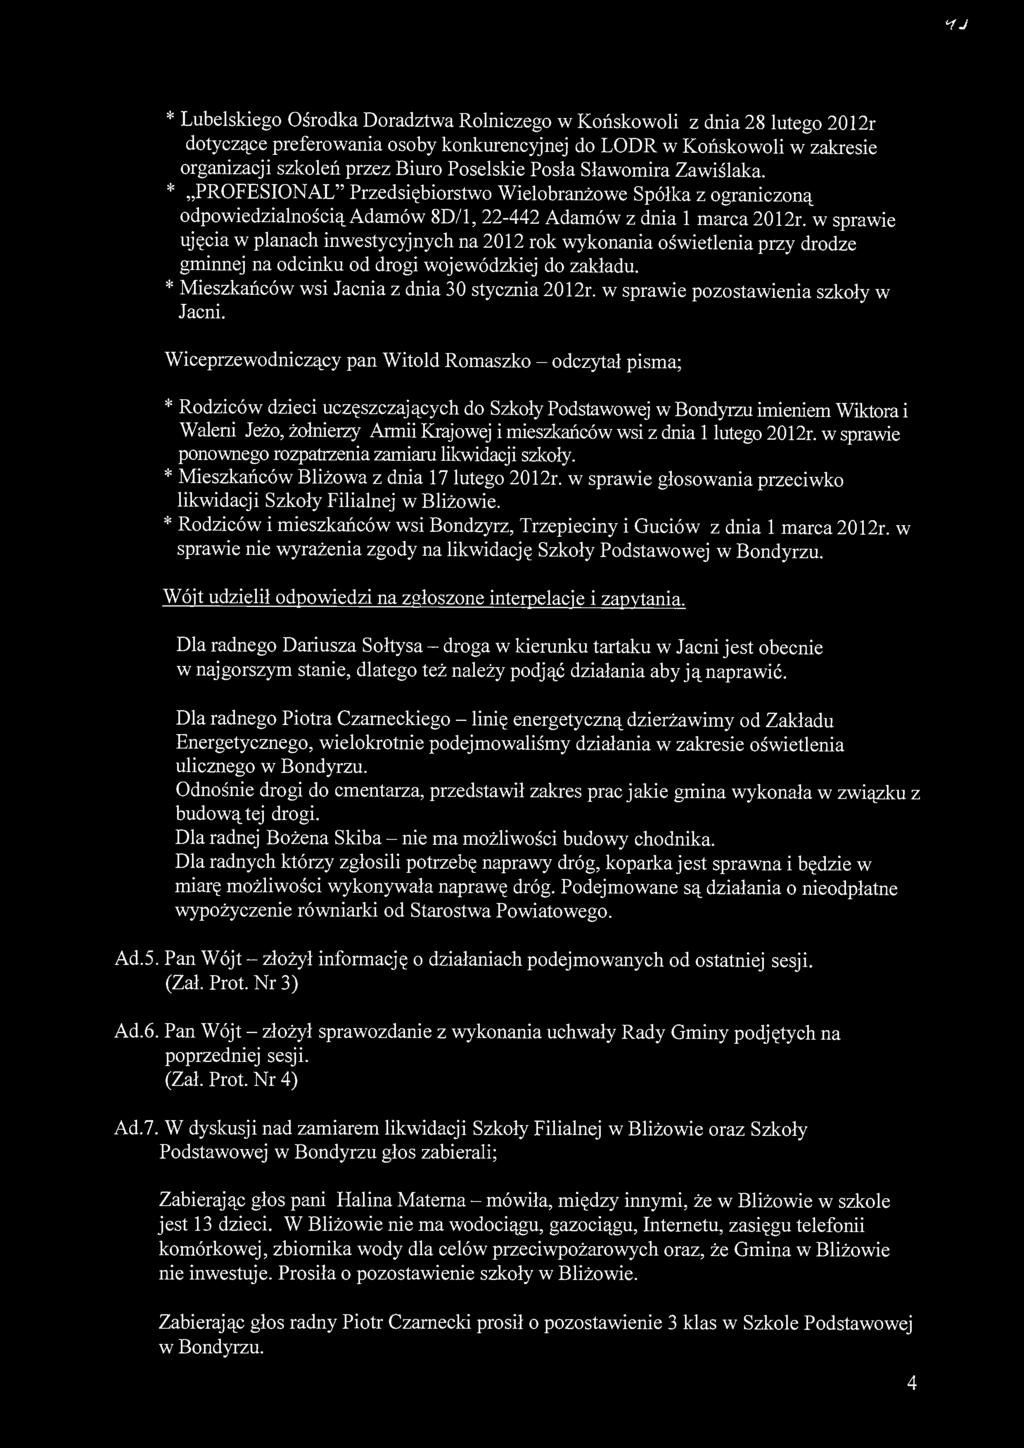 <ij * Lubelskiego Ośrodka Doradztwa Rolniczego w Końskowoli z dnia 28 lutego 2012r dotyczące preferowania osoby konkurencyjnej do LODR w Końskowoli w zakresie organizacji szkoleń przez Biuro